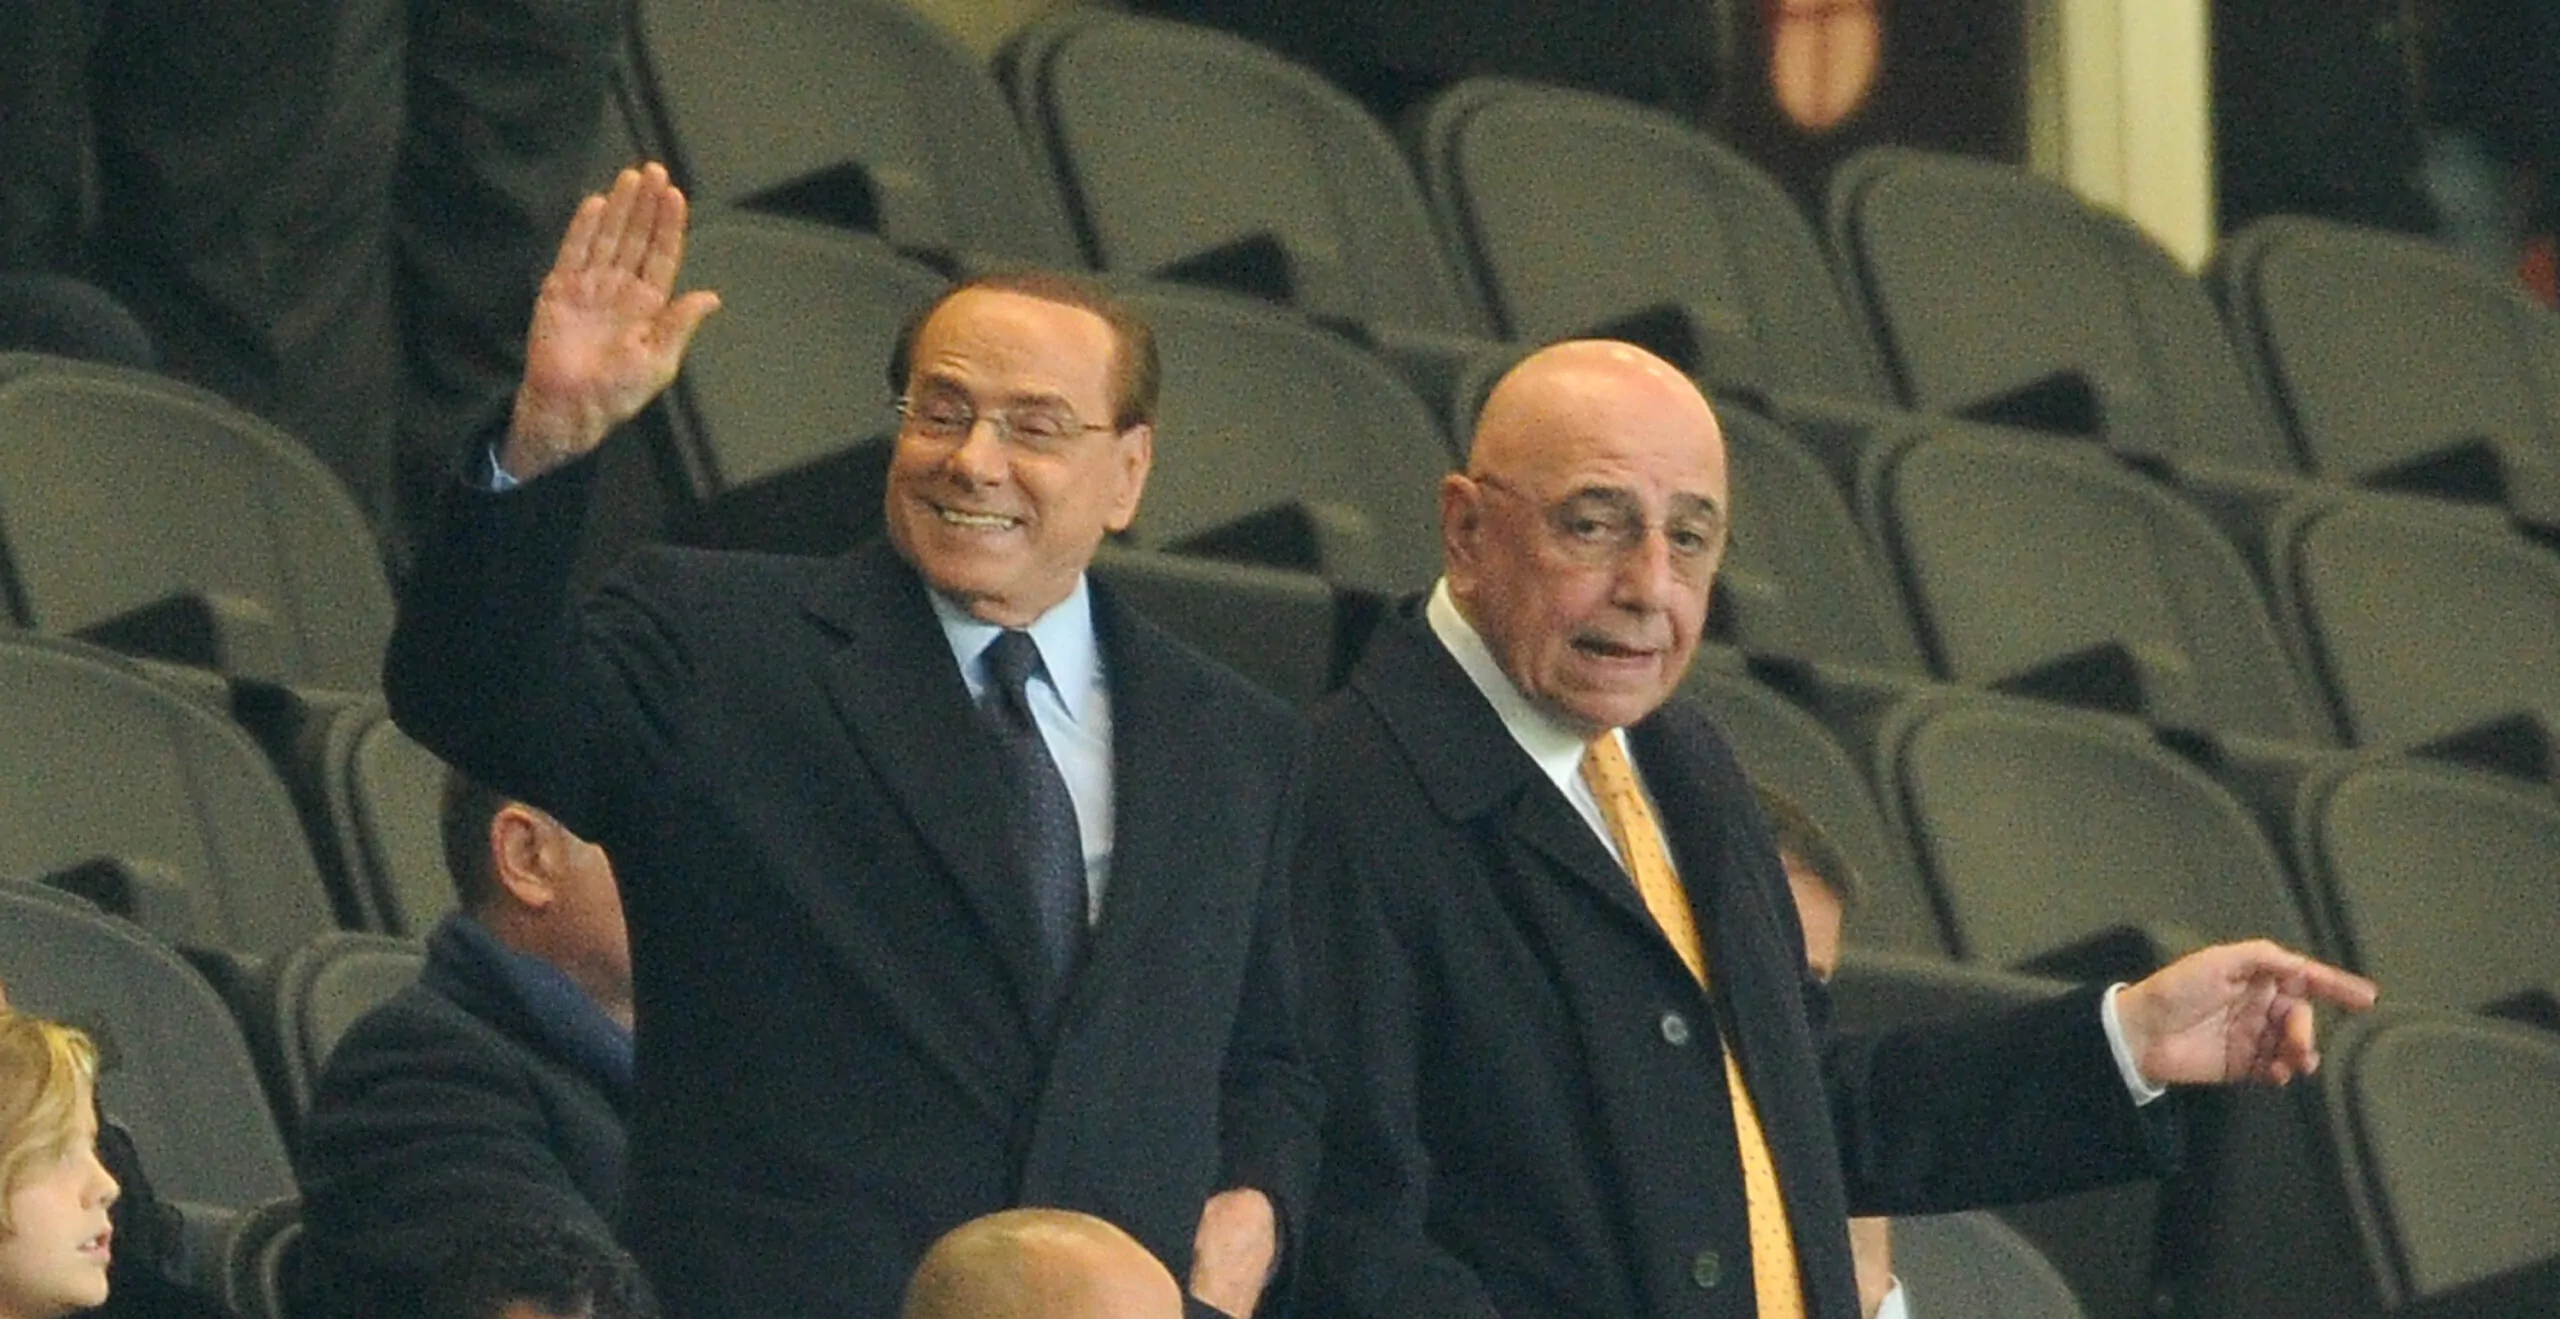 Galliani e Berlusconi tornano a San Siro, Costacurta sicuro: “I tifosi lo faranno per loro”